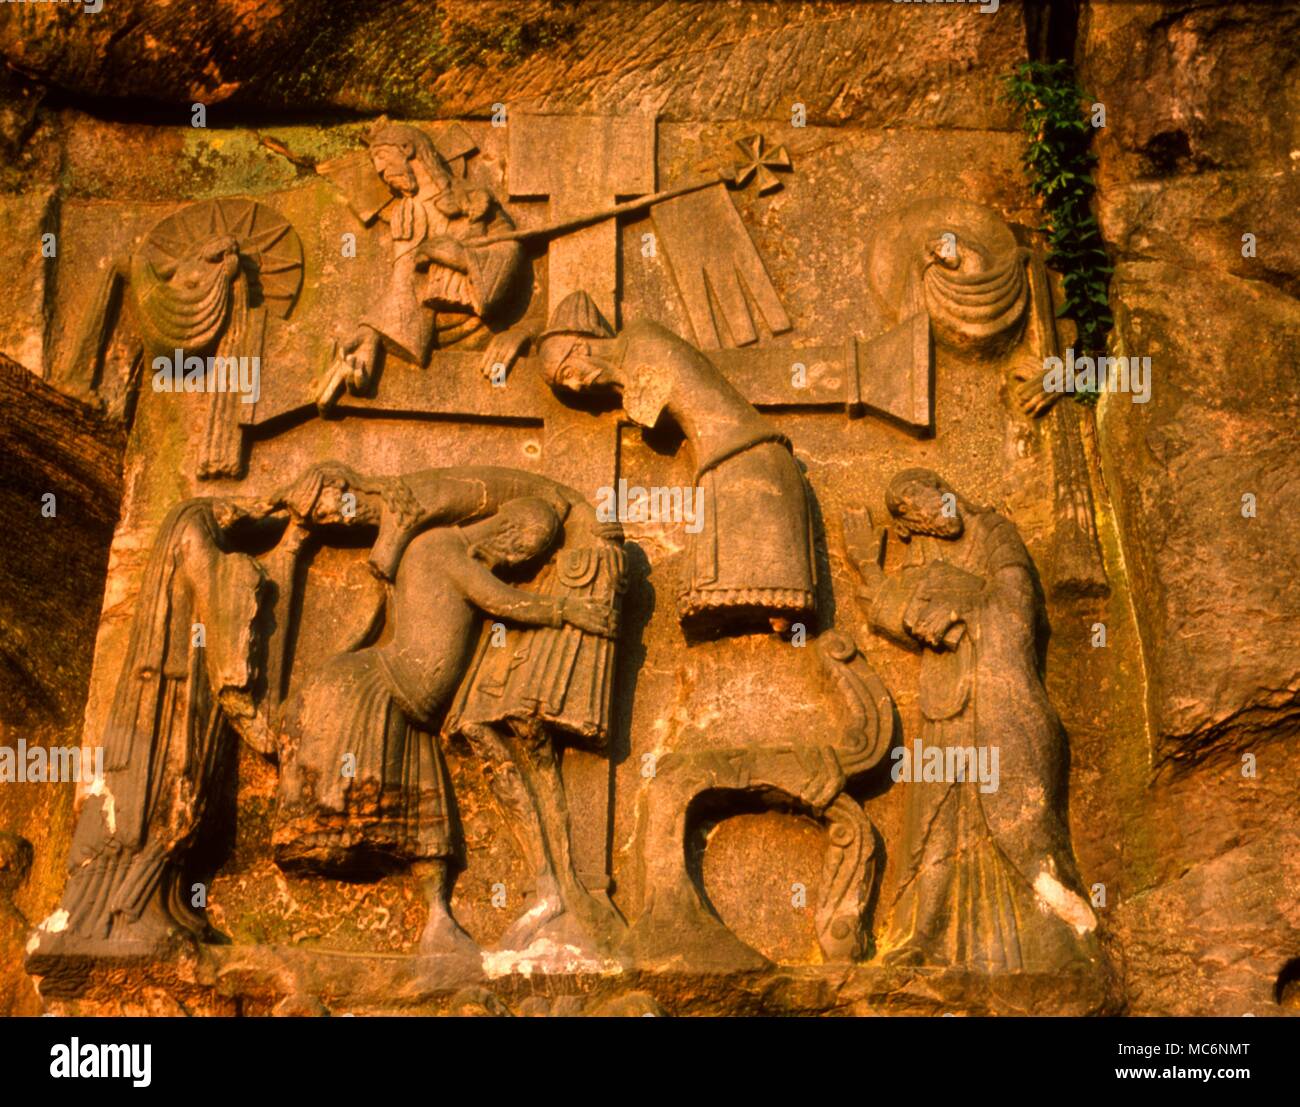 La franchigia di sculture su roccia Exernsteine depics Cristo sollevato fromt "l'albero" come una versione del mito di Odin. Ai piedi della scena, il Urminsul, l'antico albero di mito teutonico, curve in omaggio. Foto Stock